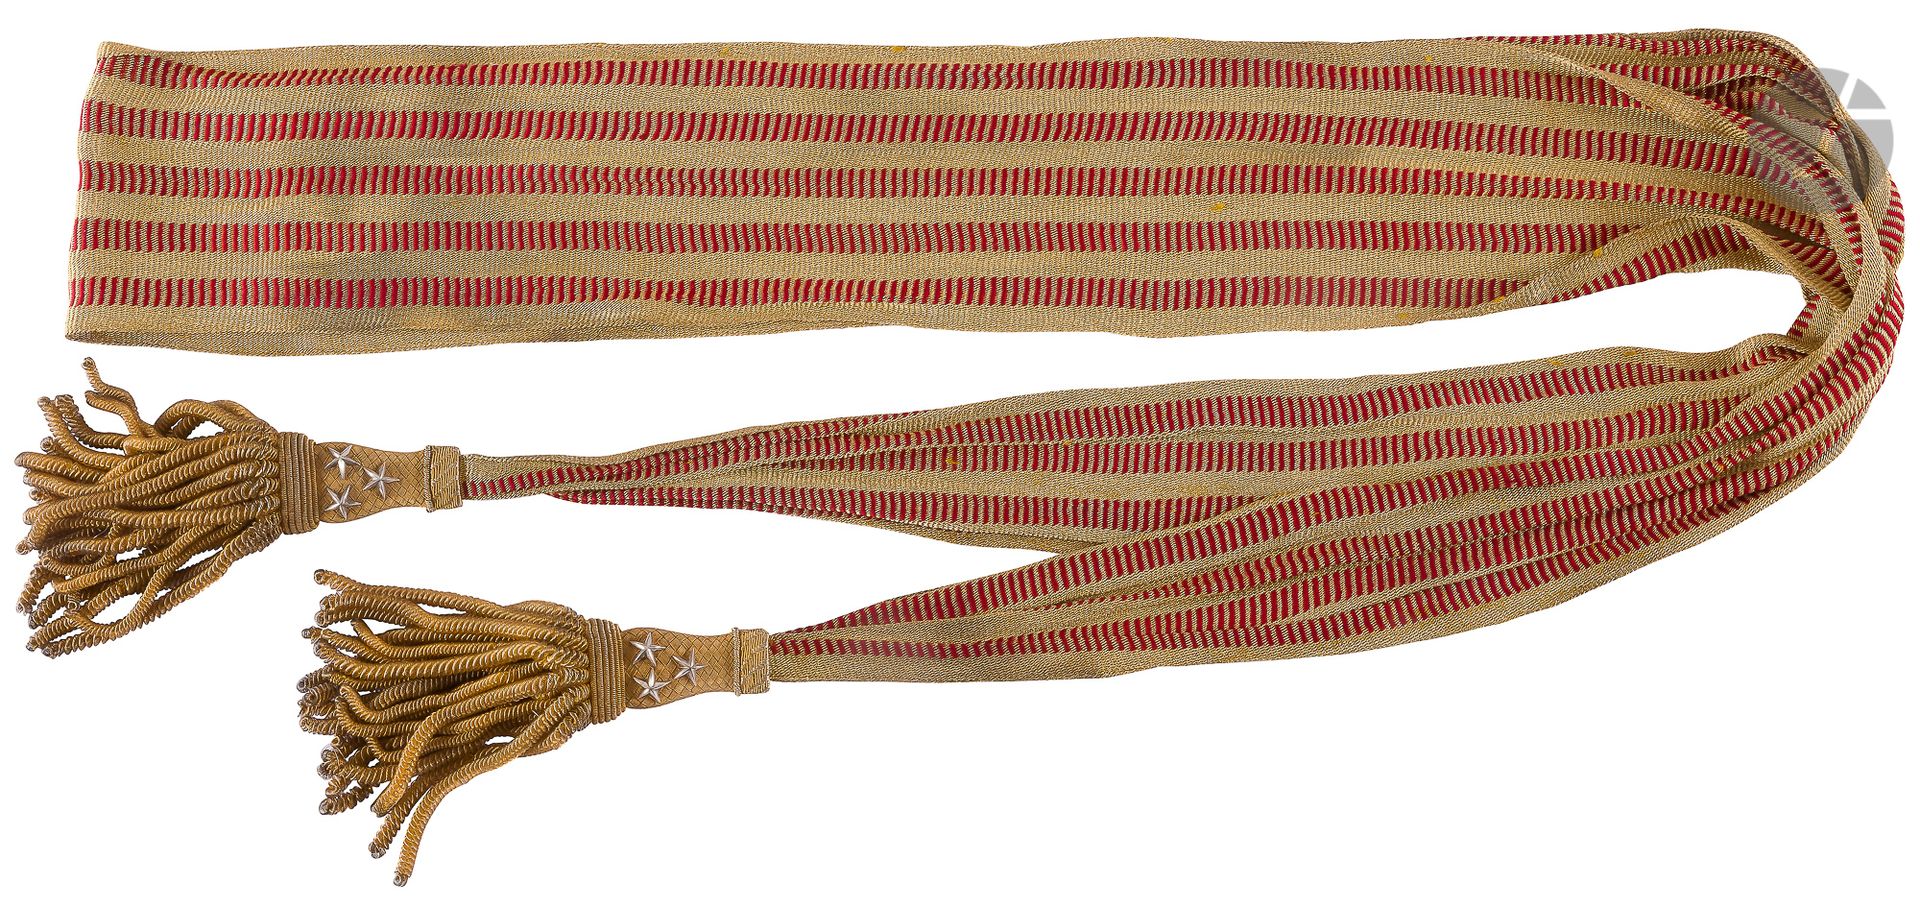 Null 师长的腰带是金黄色和大红色的通行证，流苏上有其三颗银星。
在其盒子里的制造商E.巴黎比达尔。
B.E. 出处
：安托万-博德穆兰将军（1857-192&hellip;